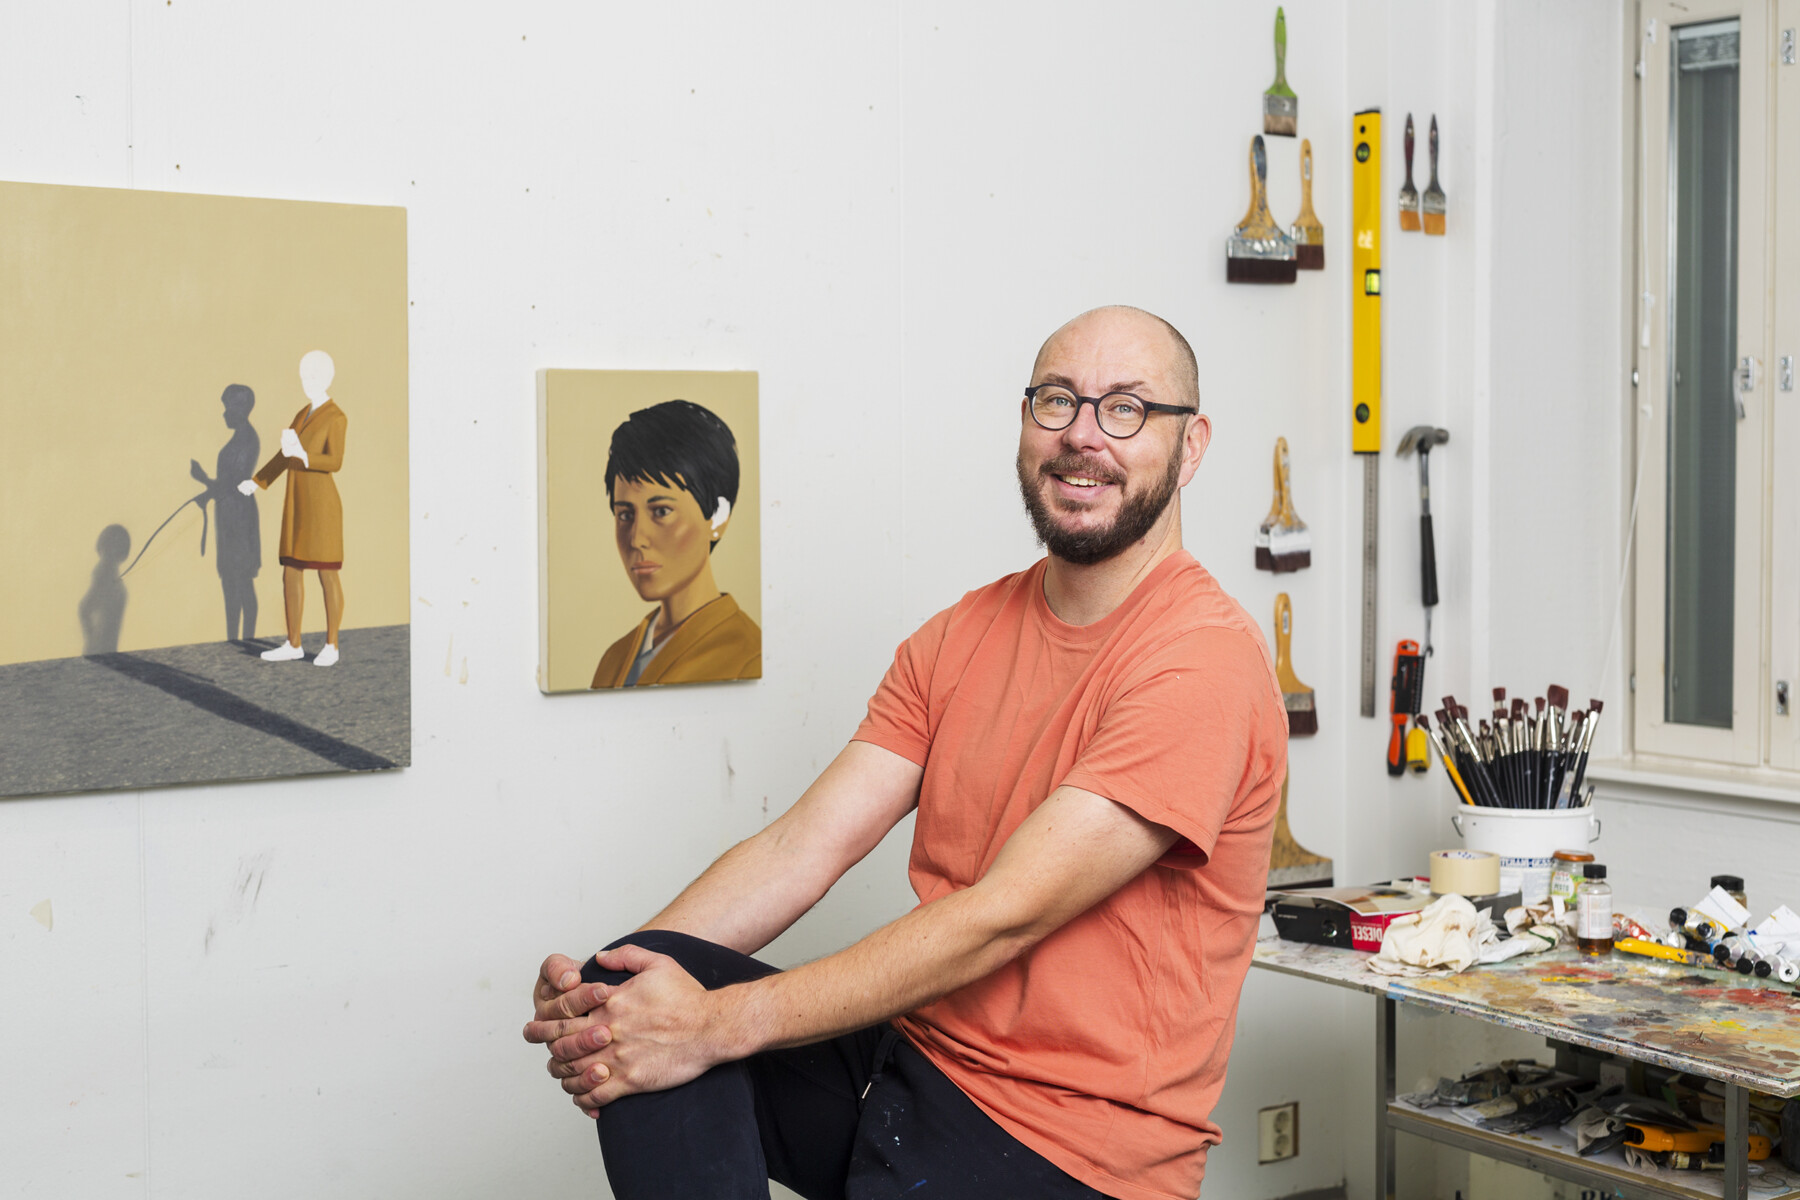 Мужчина сидит в художественной мастерской, на стене которой висят кисти, рабочие инструменты и картины.